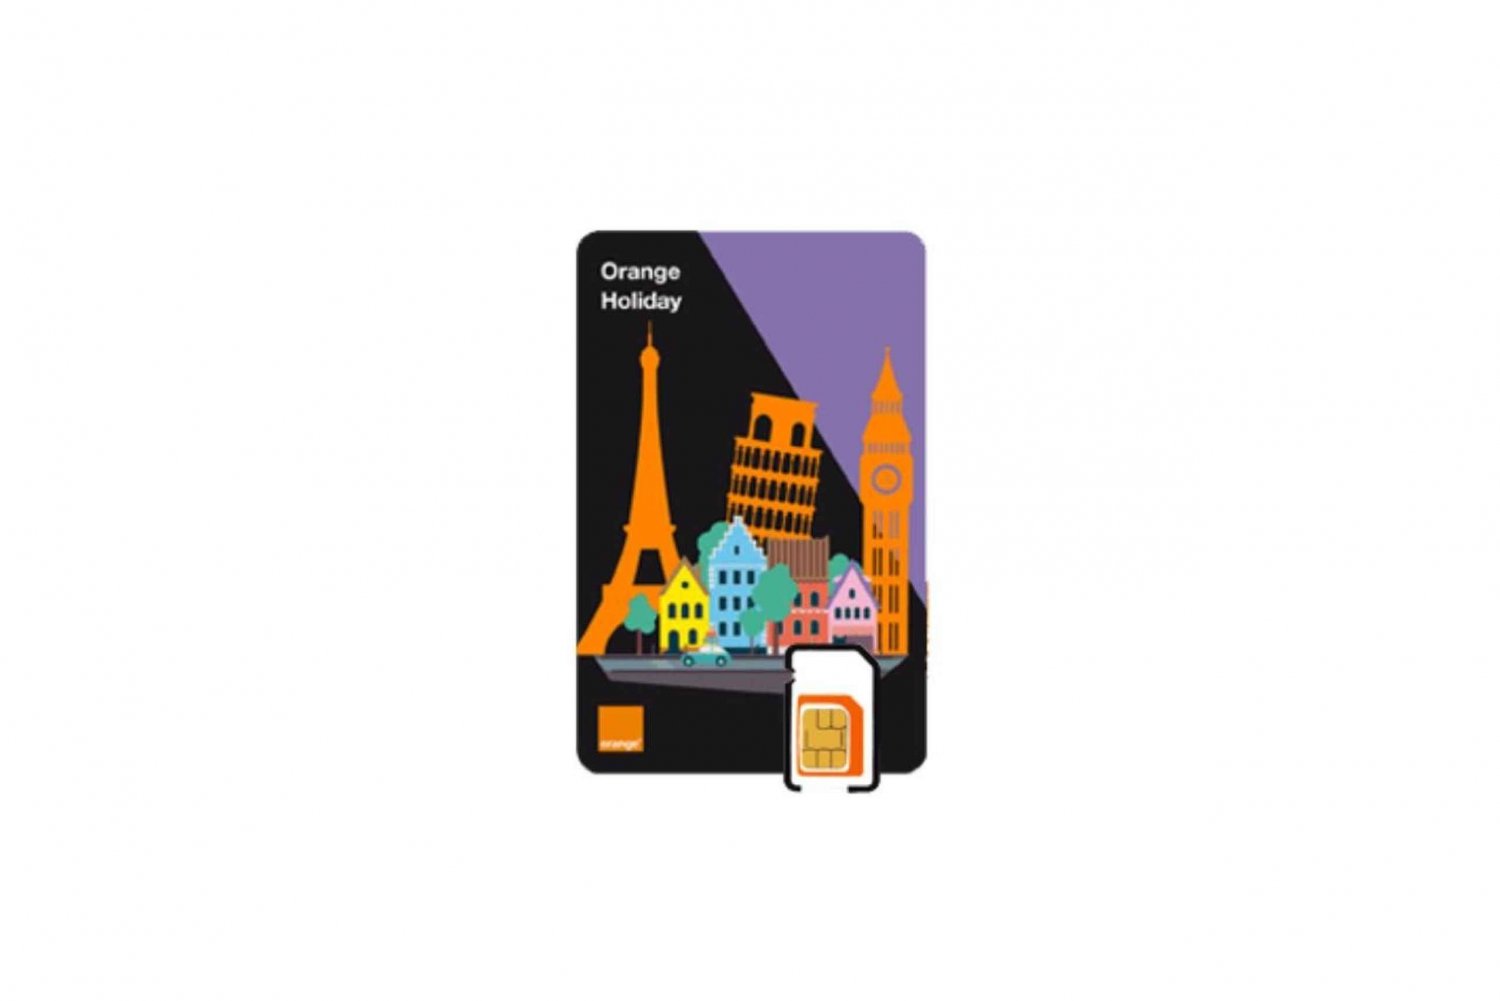 Europa: Prepaid eSIM-kaart van 12 GB met gegevens en een geldigheidsduur van 14 dagen